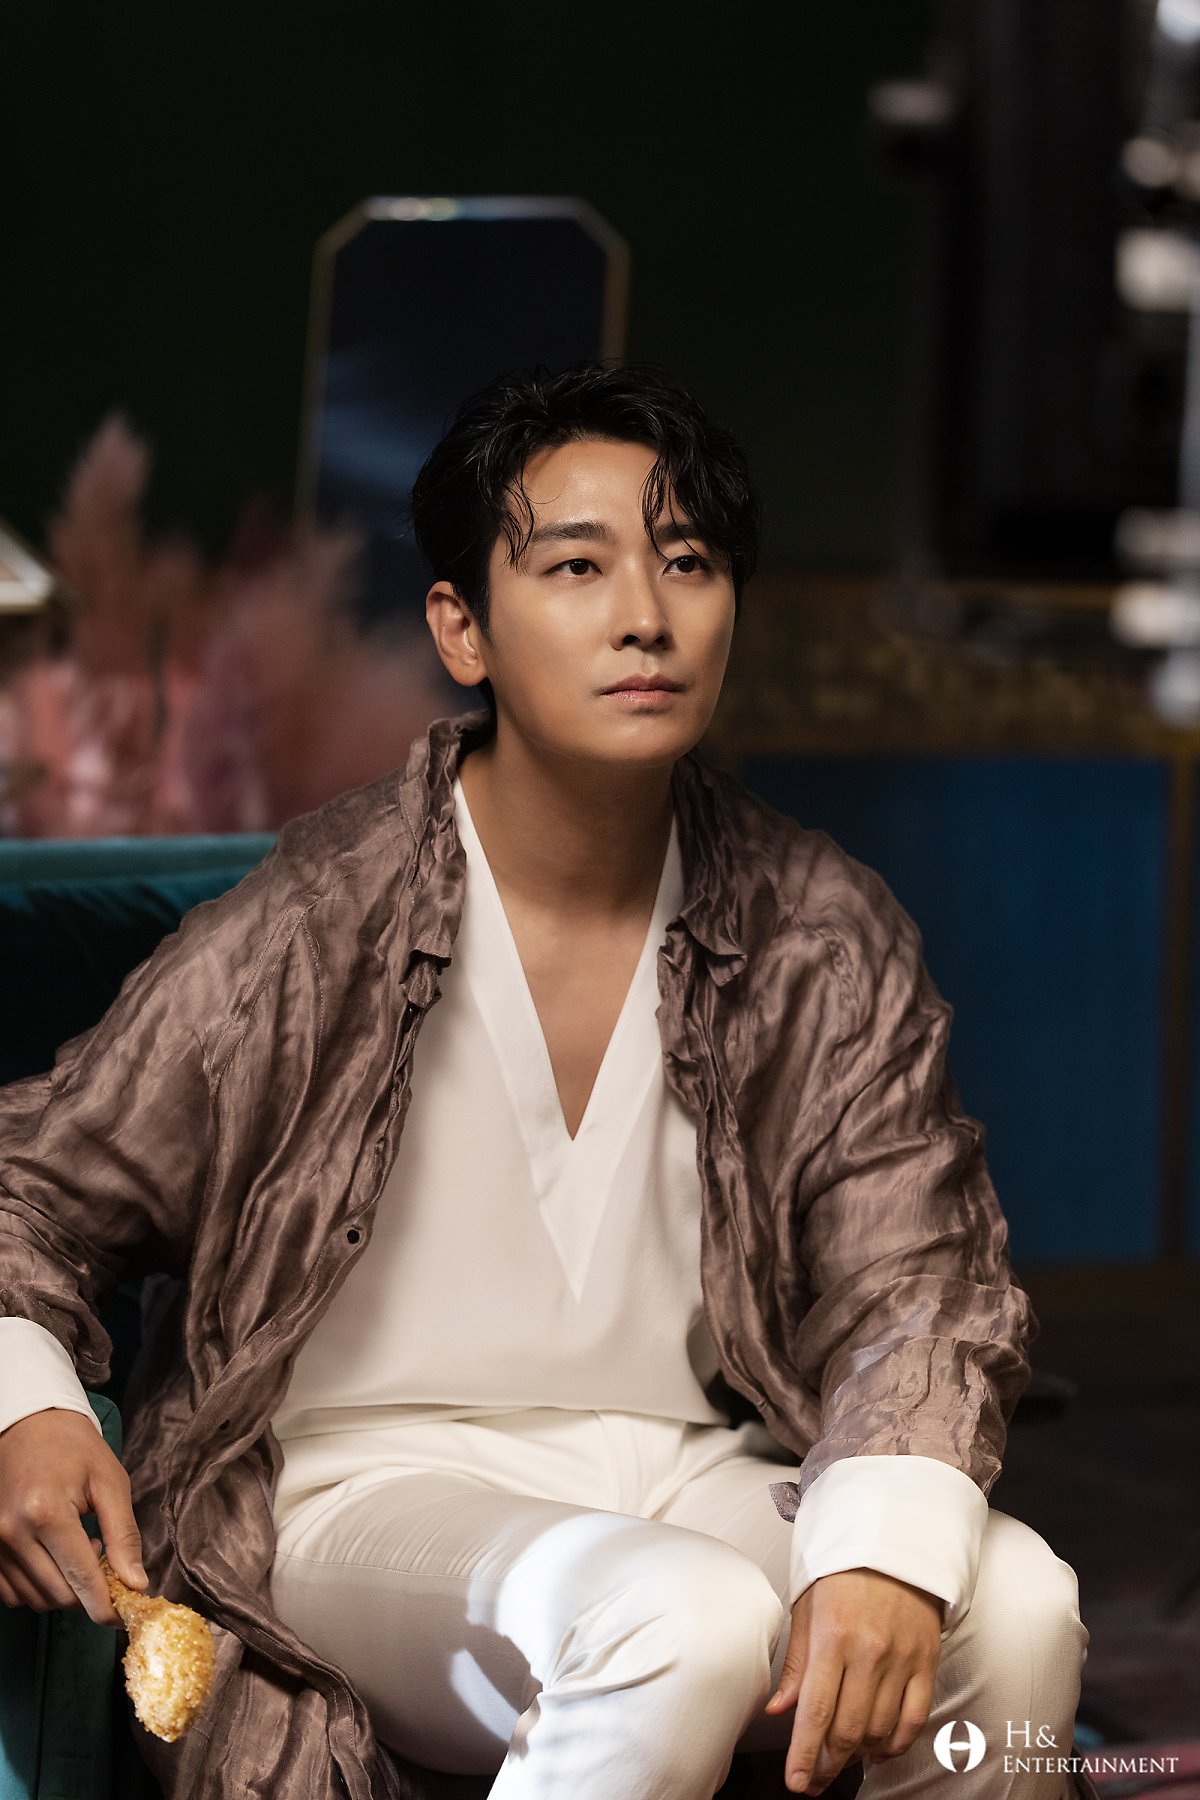 “Thái tử Kbiz” Joo Ji Hoon: Vươn tầm ngôi sao quyền lực sau bê bối sử dụng chất cấm, ở tuổi 41 vẫn mang danh “quý ông độc thân kim cương” - Ảnh 14.